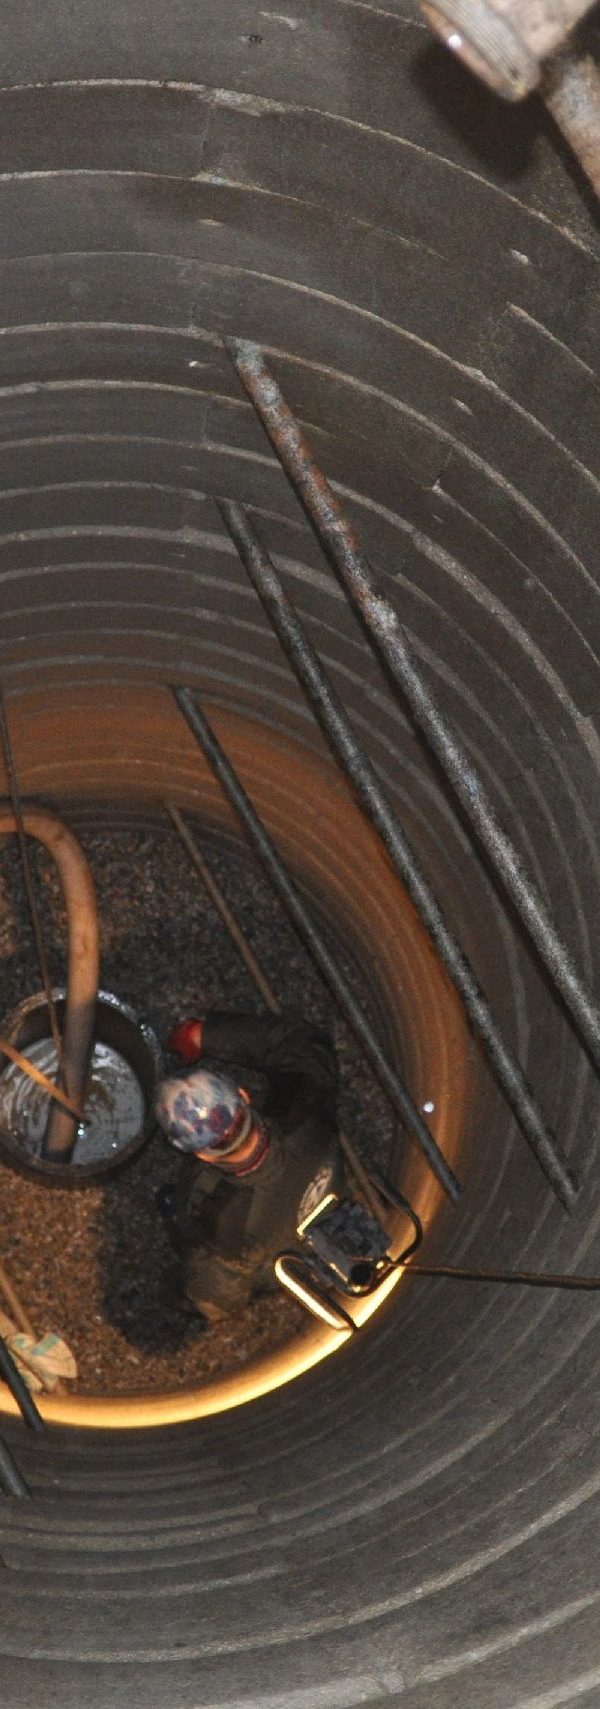 Čištění kopaných studní - Studny Aquabest